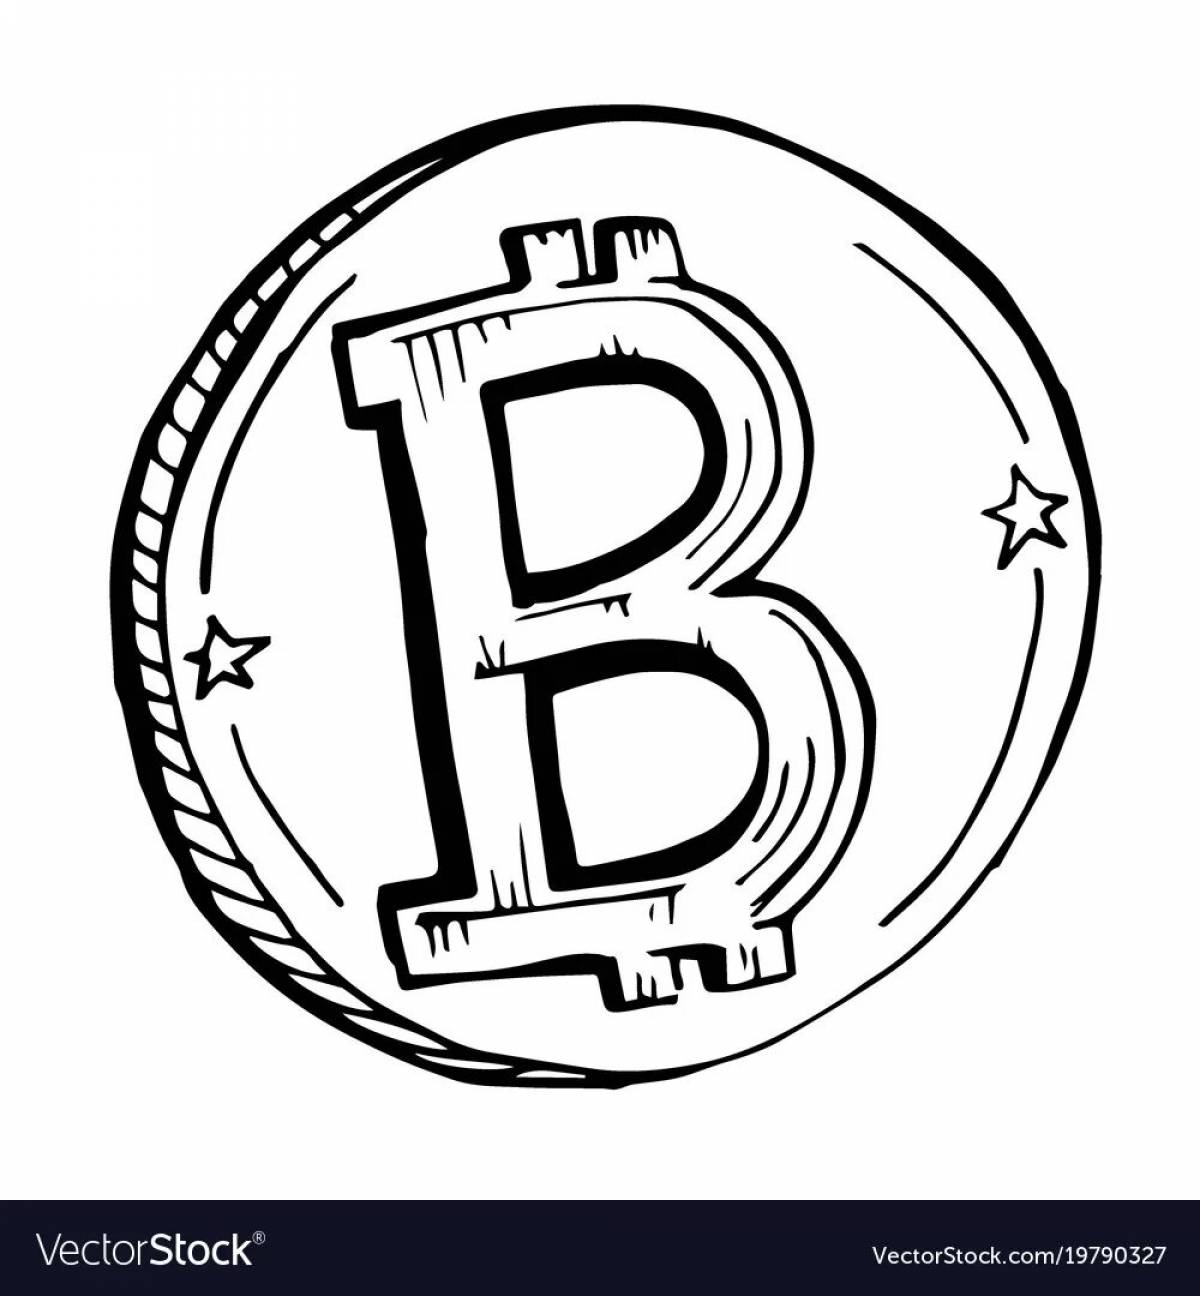 Bitcoin #20